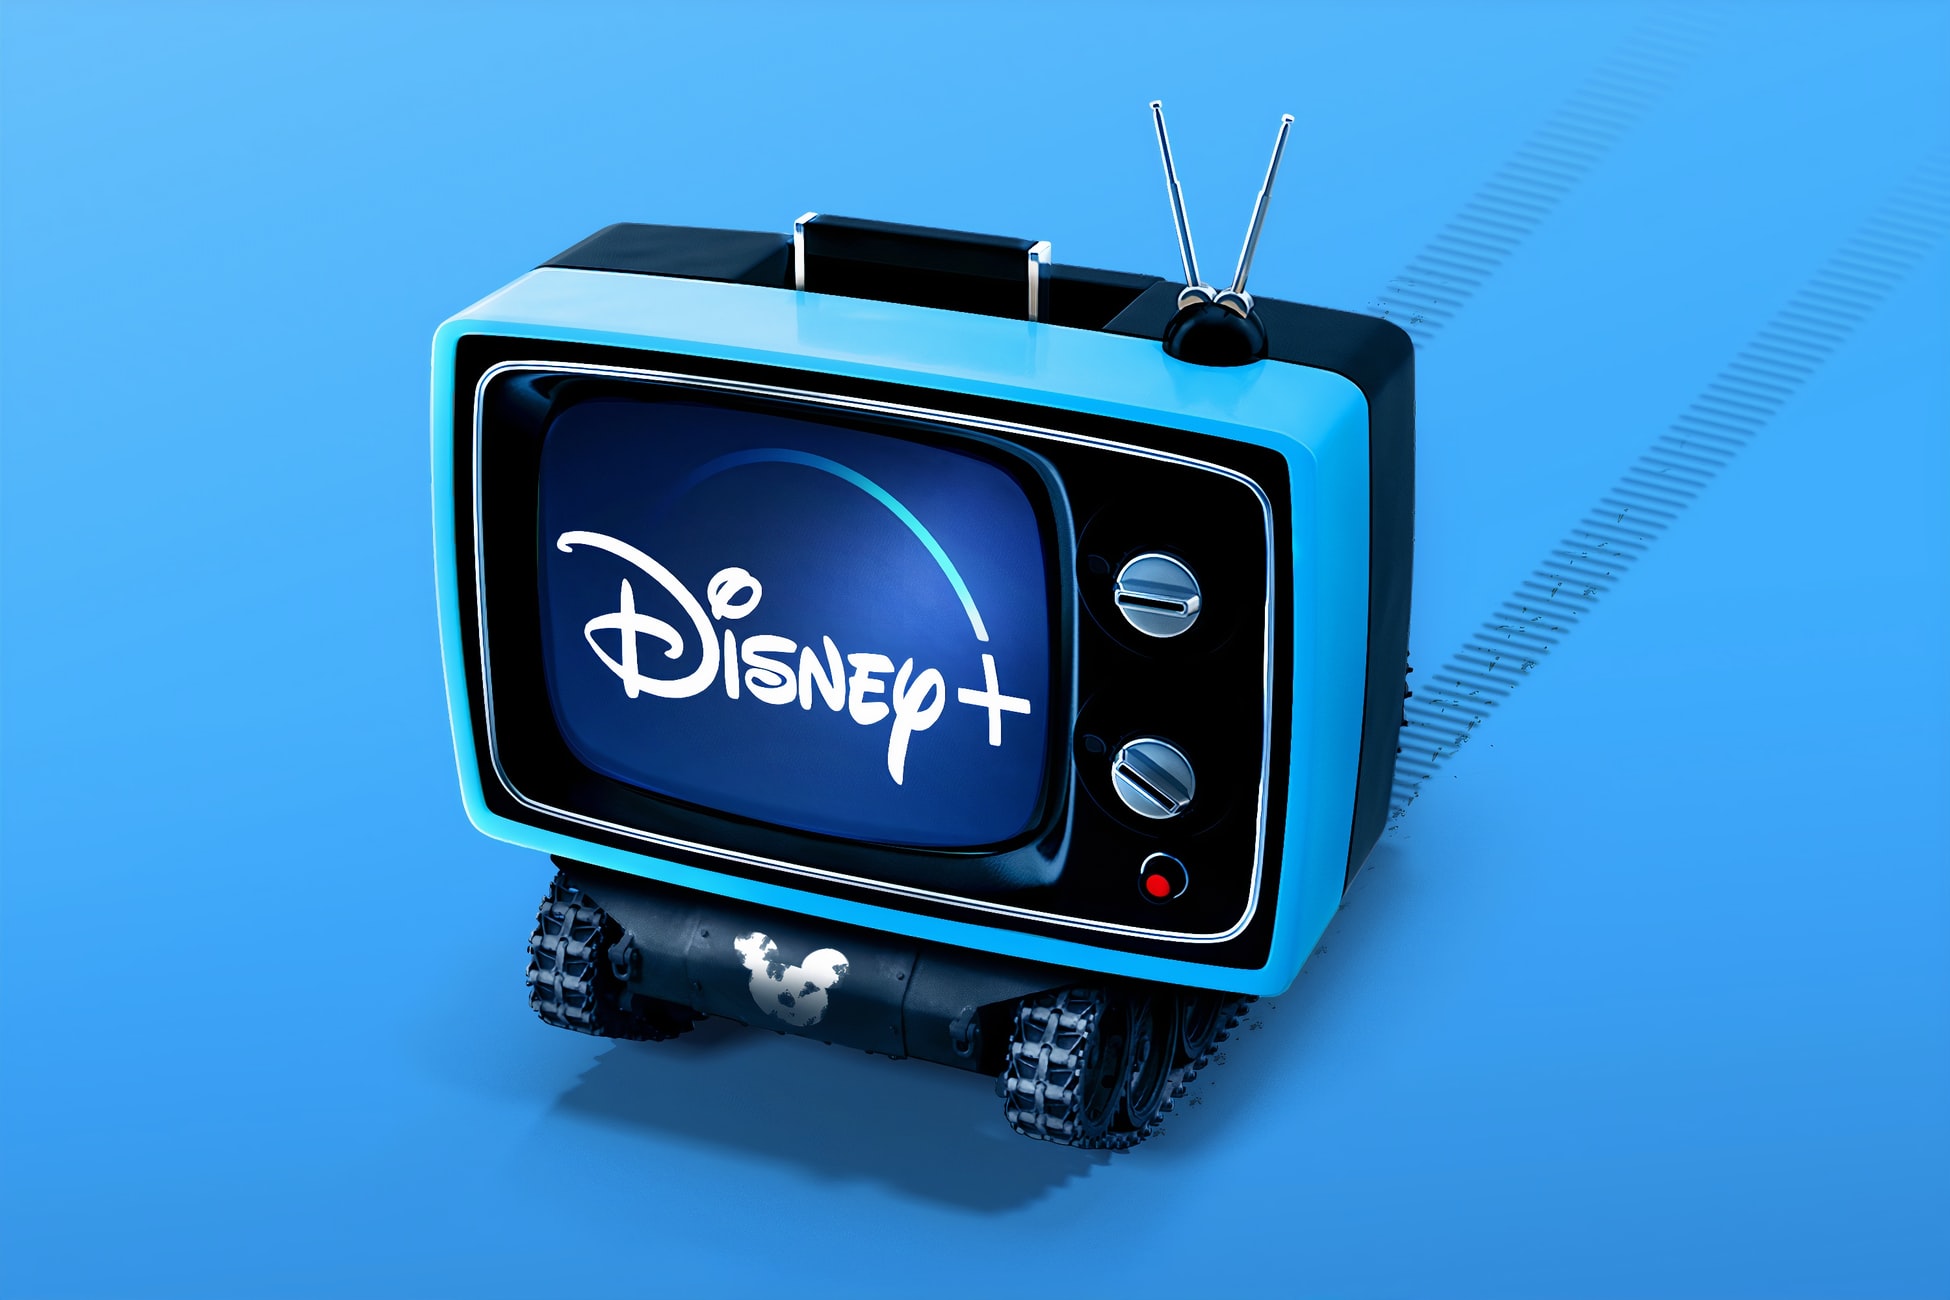 Disney+ Turut Akan Menawarkan Permainan Video Dan Edagang